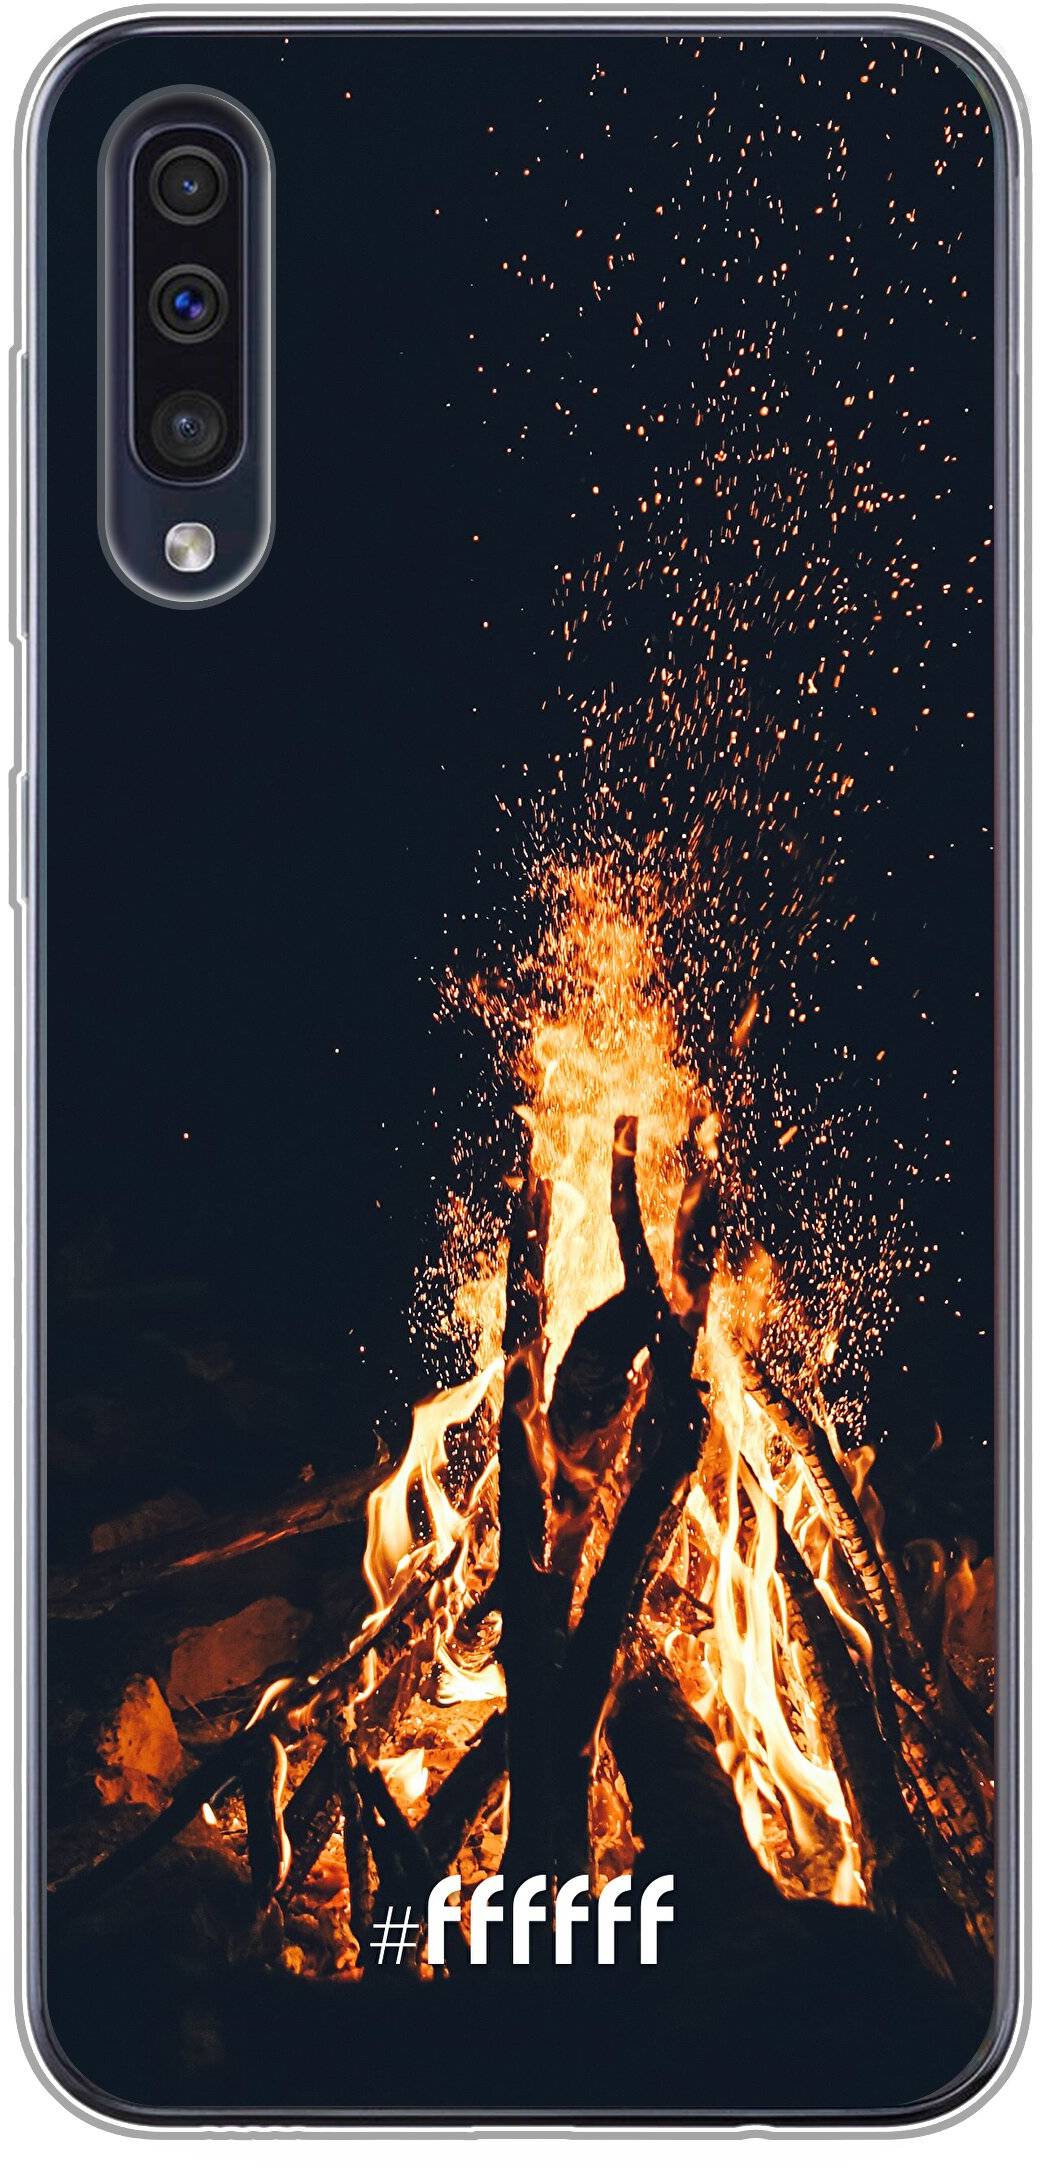 Bonfire Galaxy A50s